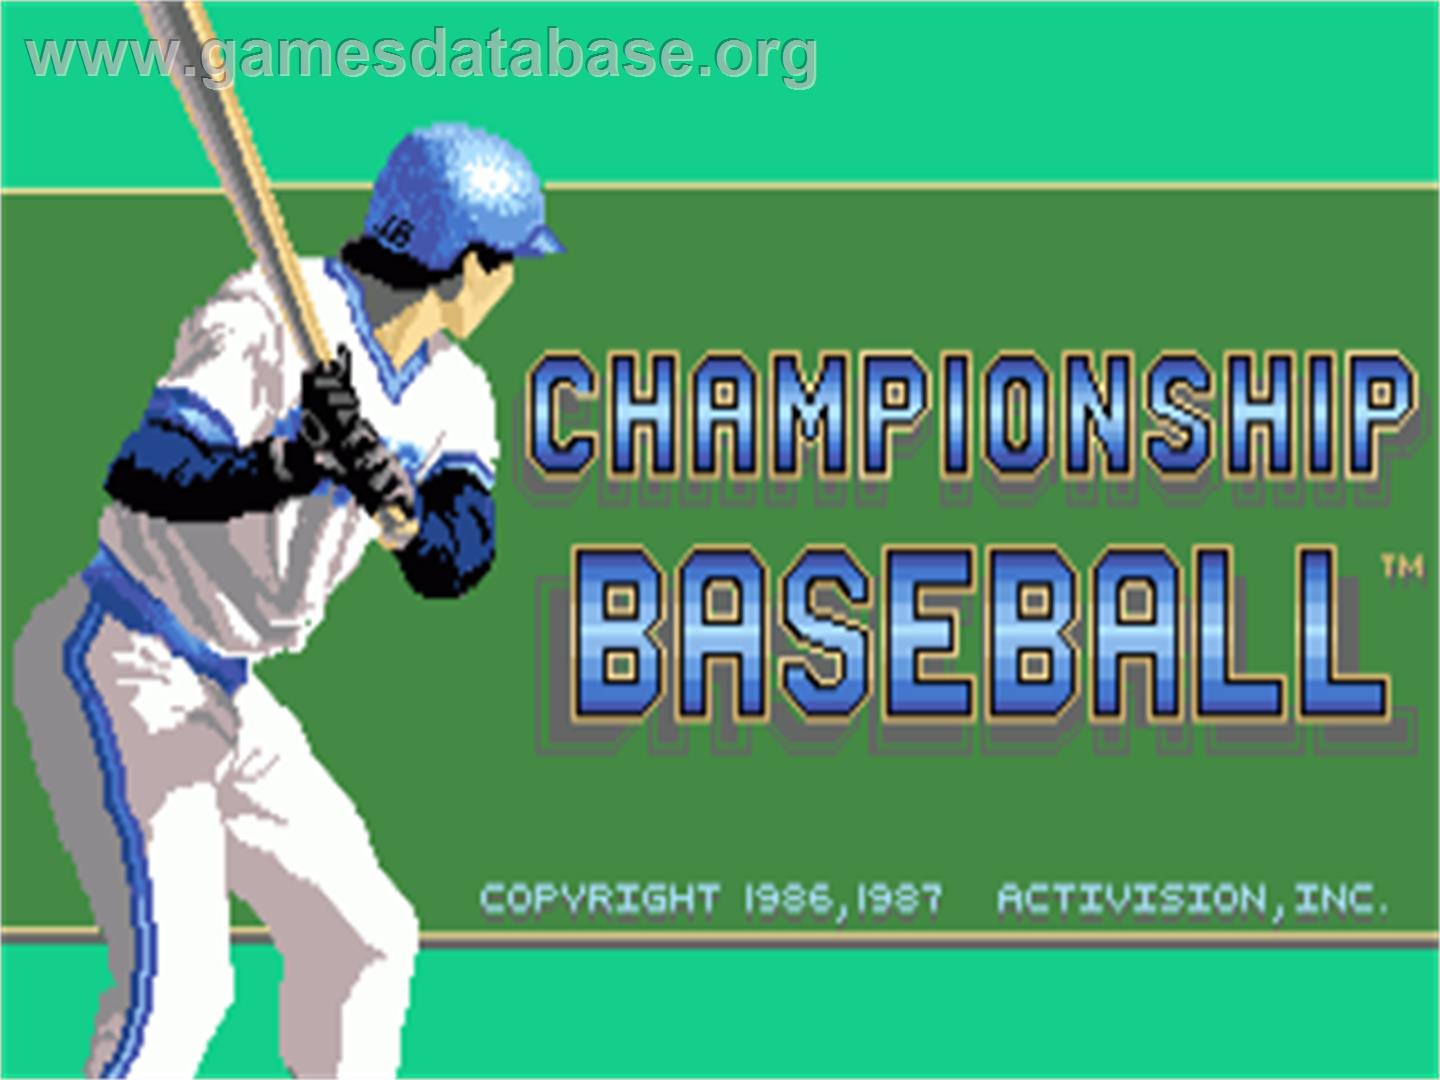 Championship Baseball - Commodore Amiga - Artwork - Title Screen